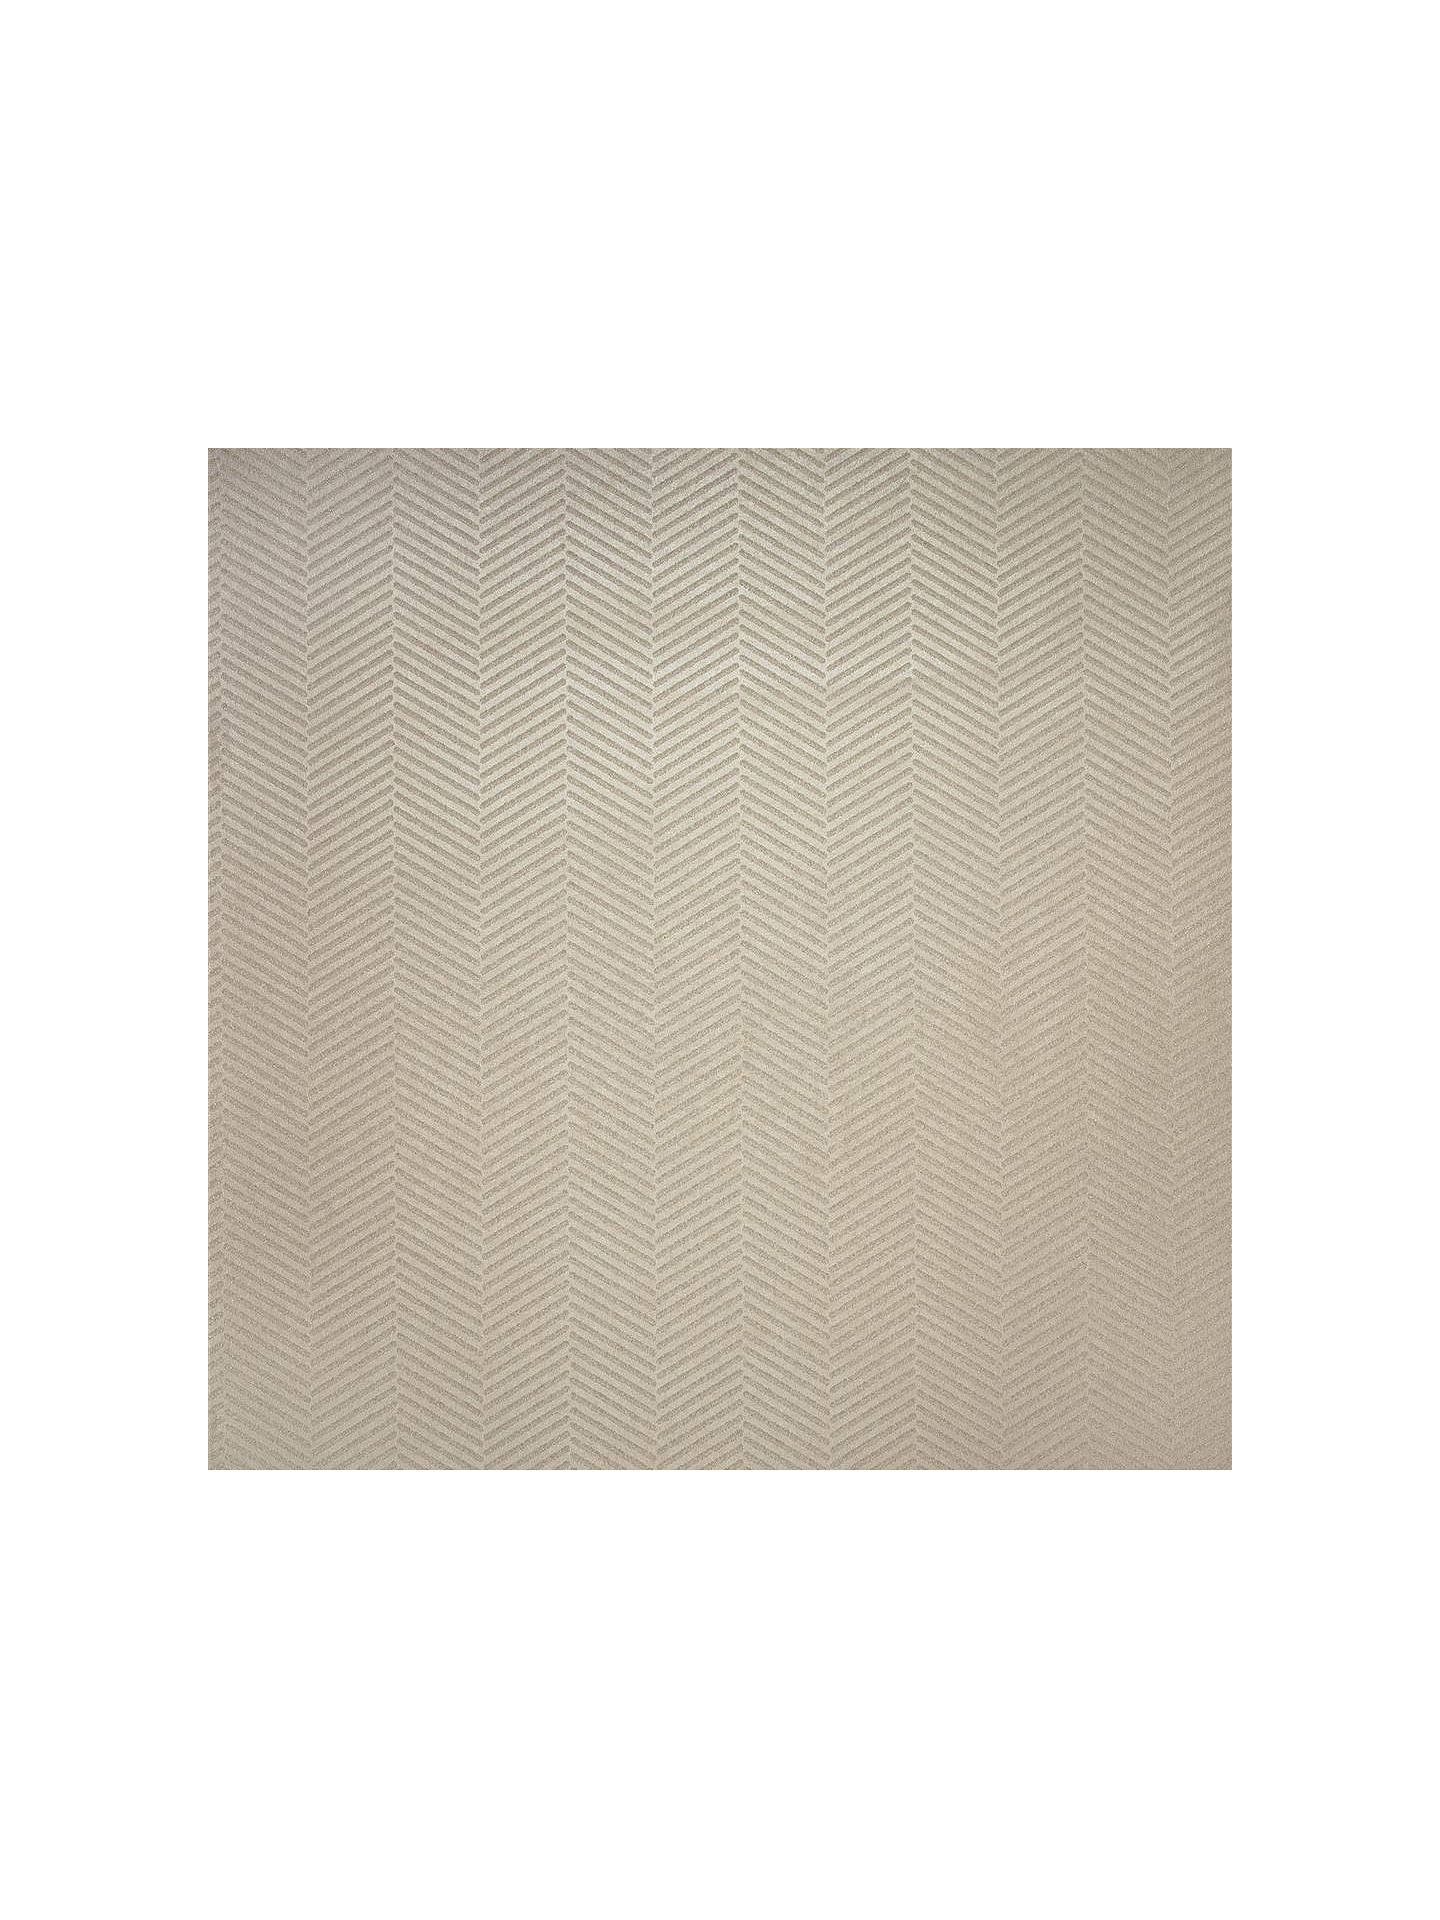 Buy Ralph Lauren Swingtime Herringbone Wallpaper, Prl5018/02 - Ralph Lauren Swingtime Herringbone , HD Wallpaper & Backgrounds